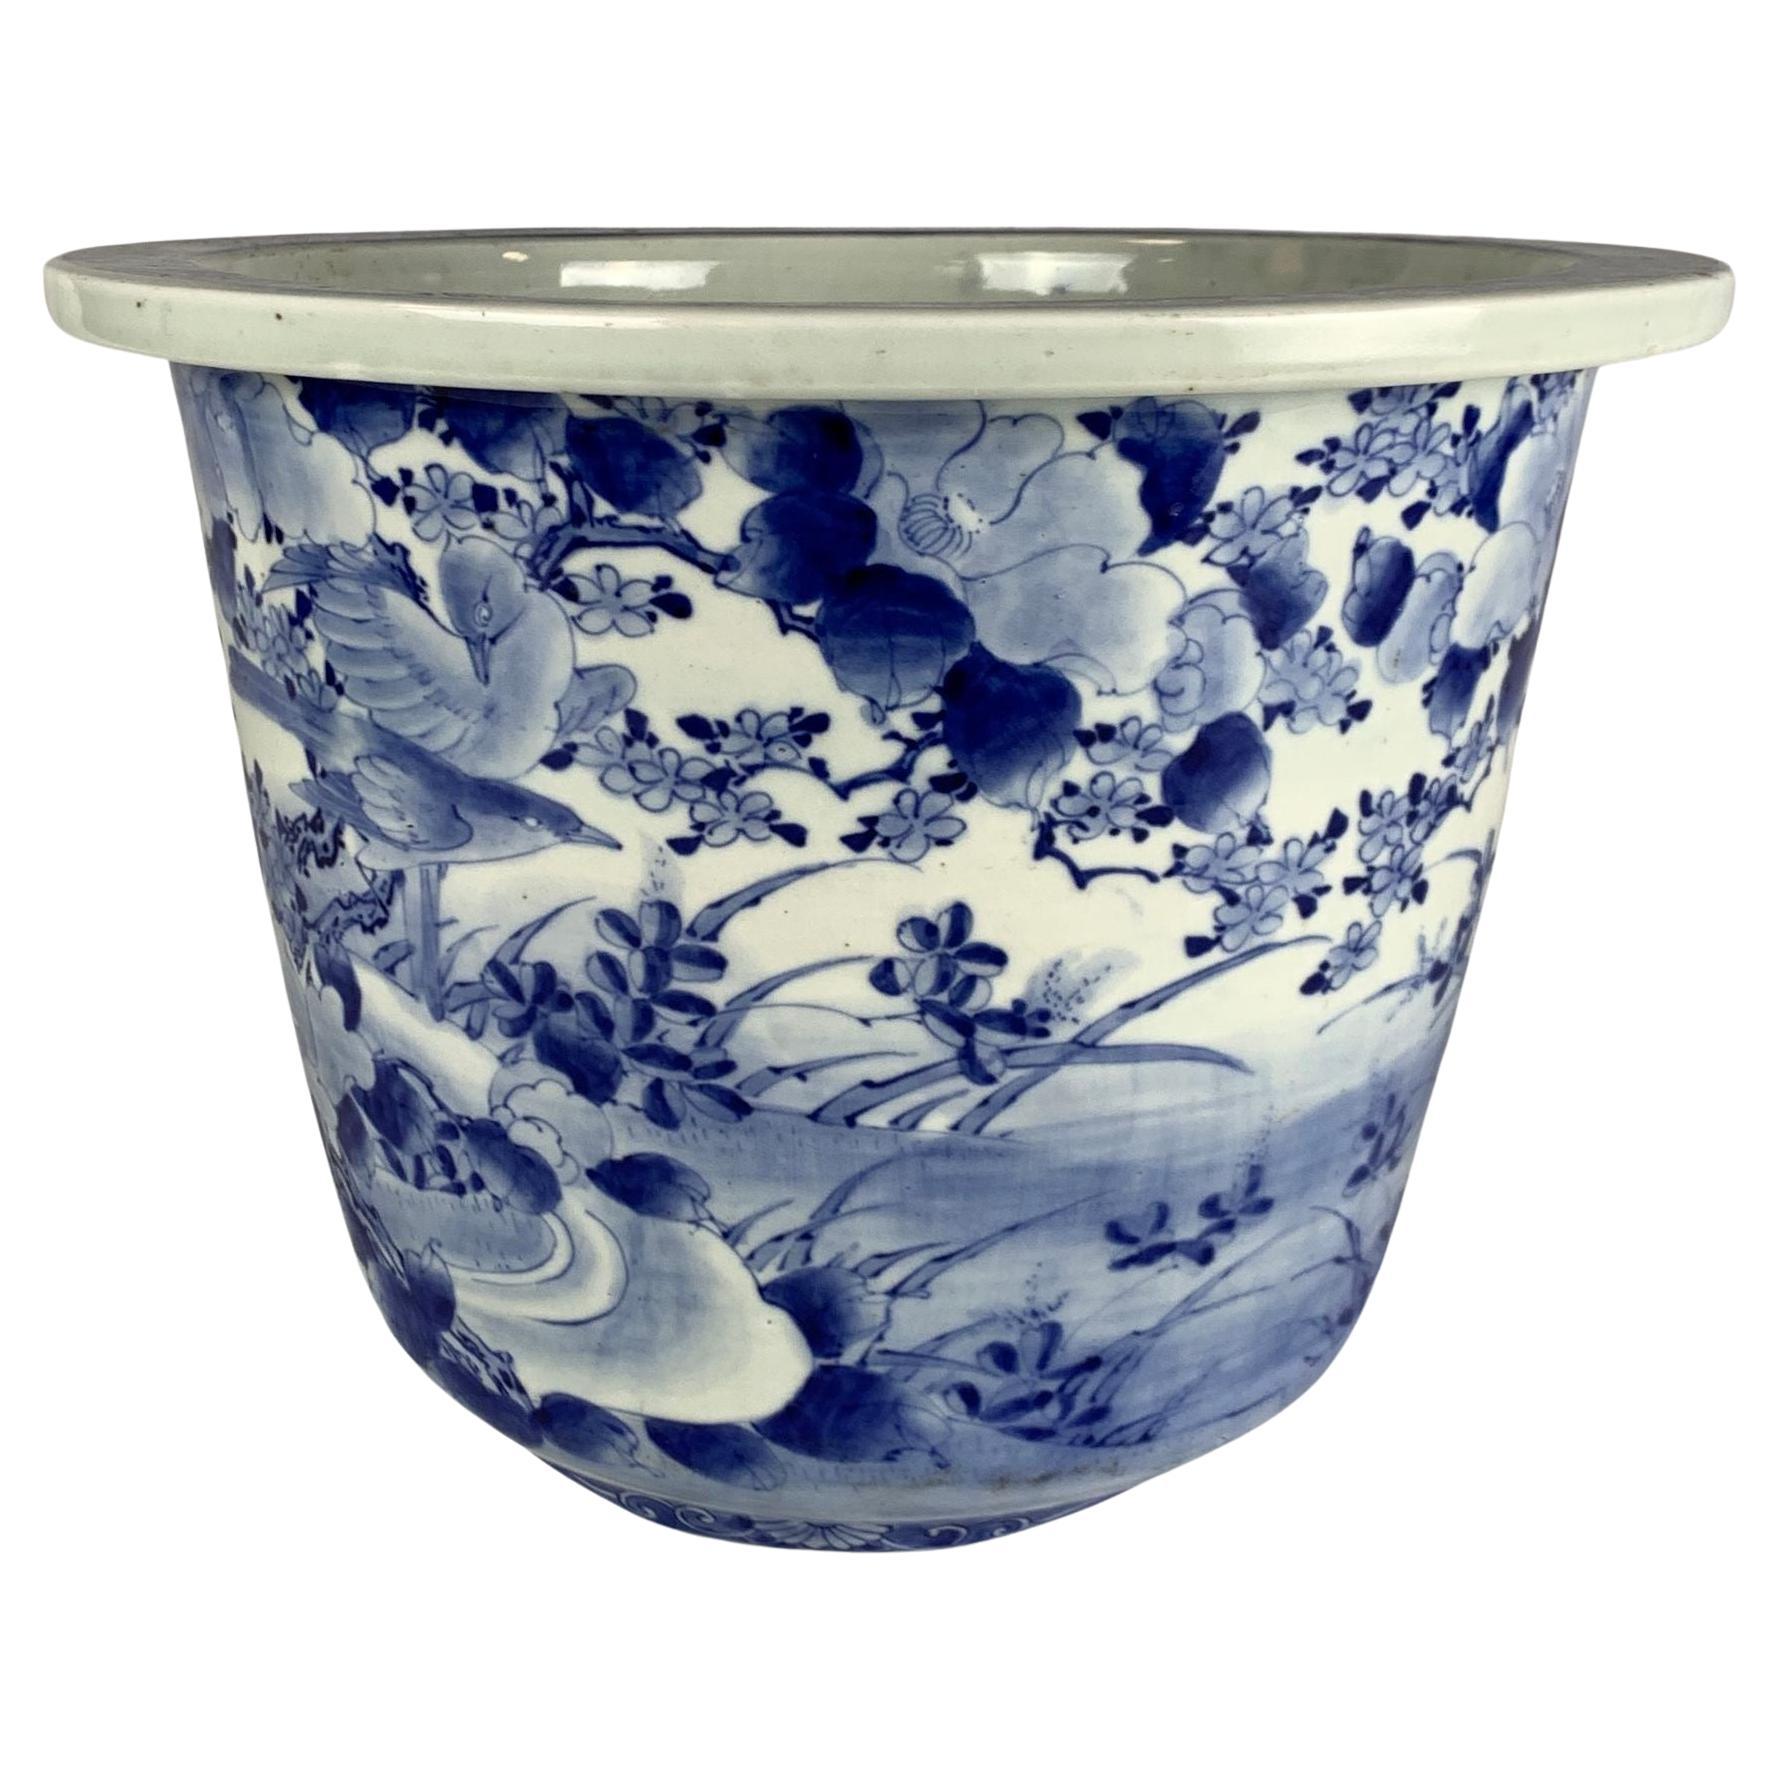 Grande jardinière bleue et blanche en porcelaine japonaise peinte à la main